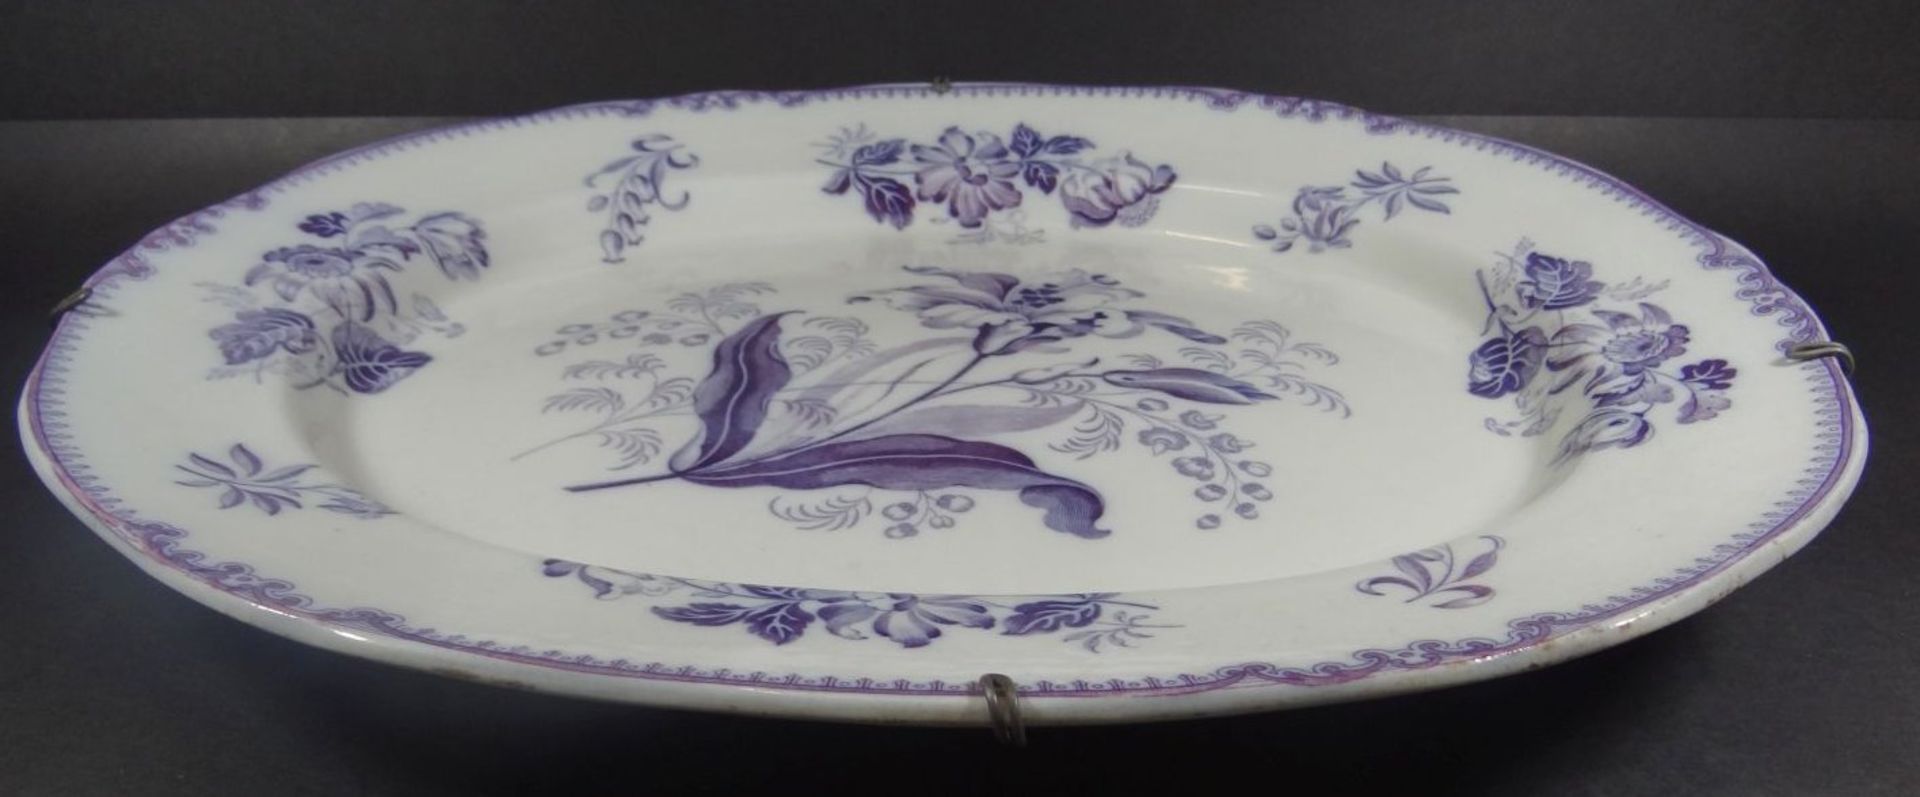 grosse ovale Platte (Gänsebräter) mit floralen Dekor um 1870, 47x39- - -22.61 % buyer's premium on - Bild 2 aus 6